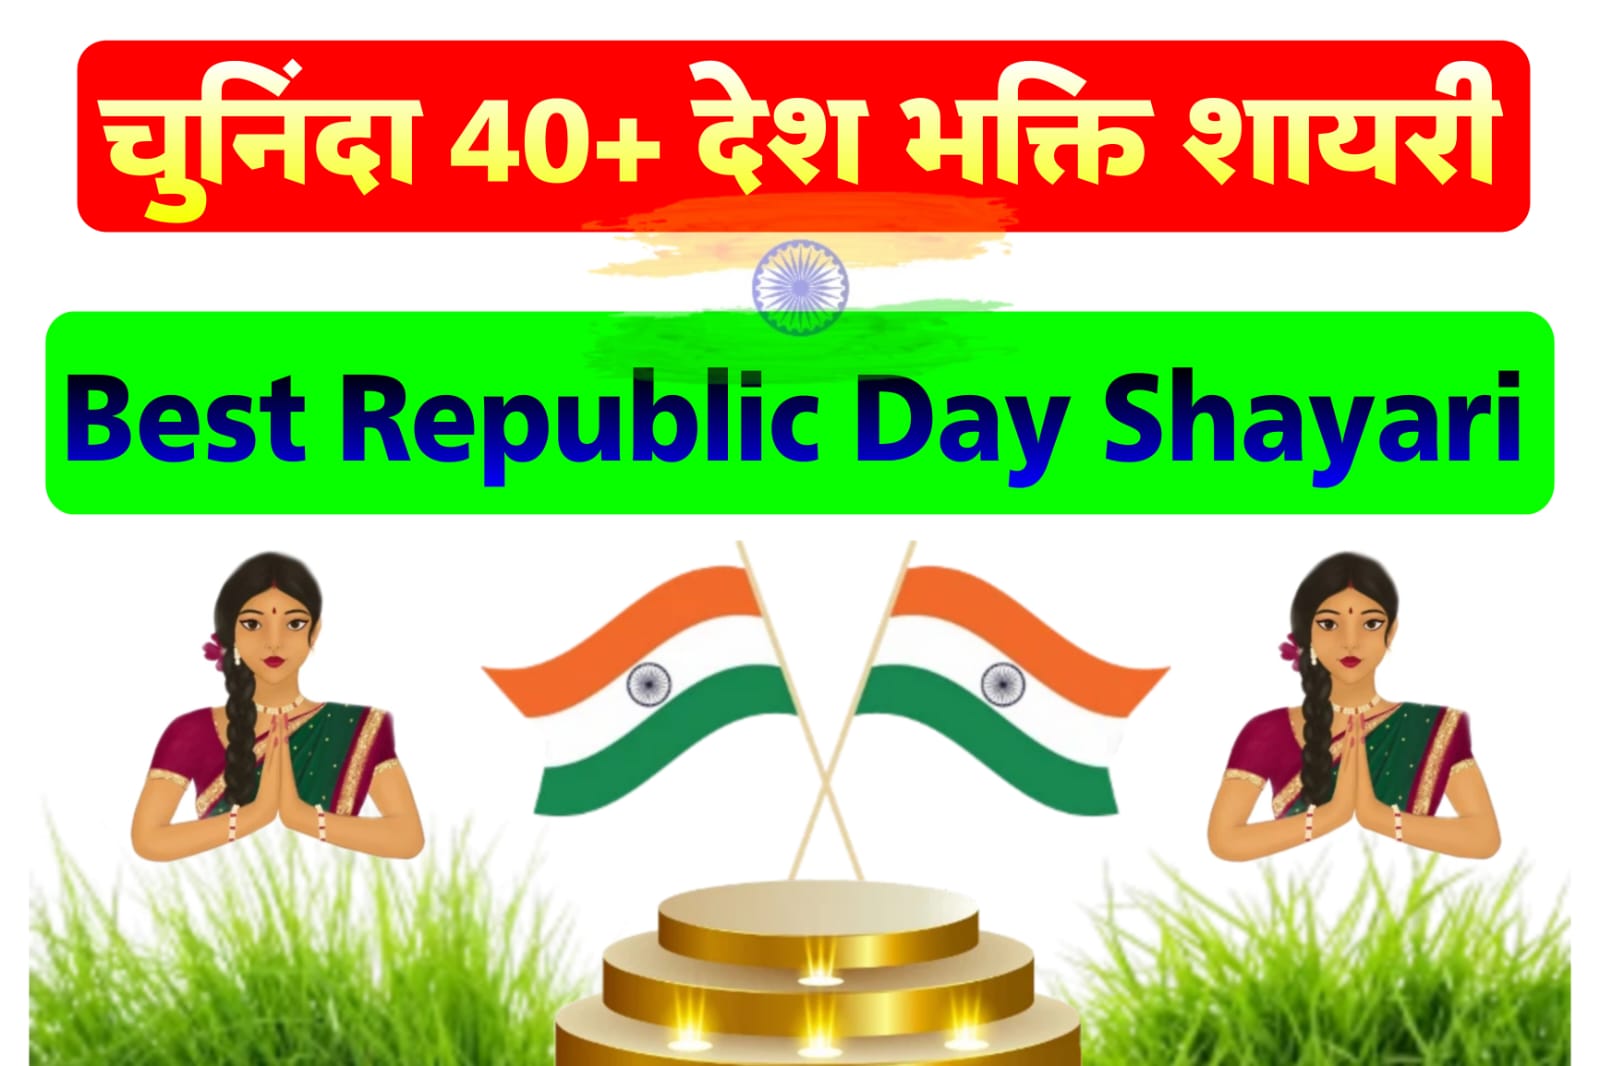 गणतंत्र दिवस पर शायरी | Republic Day Shayari in Hindi